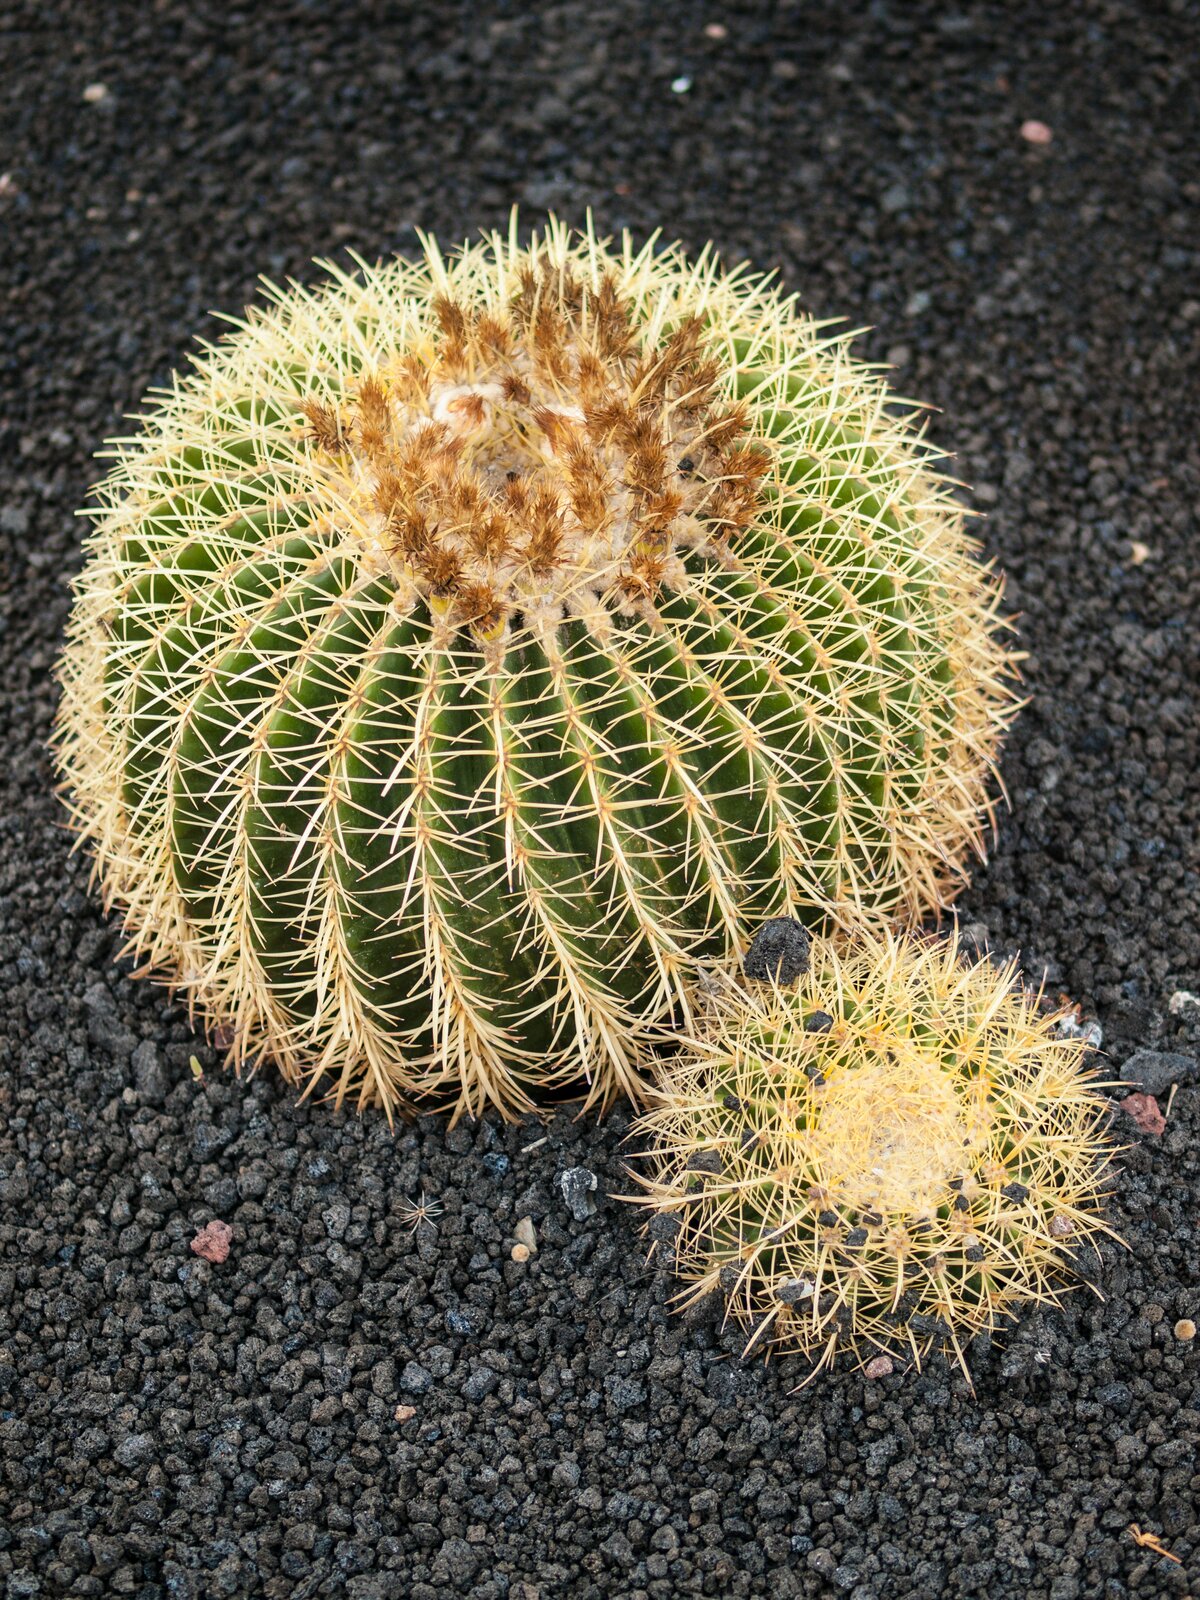 Fotografia z lewej przedstawia kuliste kaktusy na szarym podłożu. Jest duży i mały, oba mają wiele kolców i żebrowaną, grubą łodygę. Służy ona gromadzeniu wody.